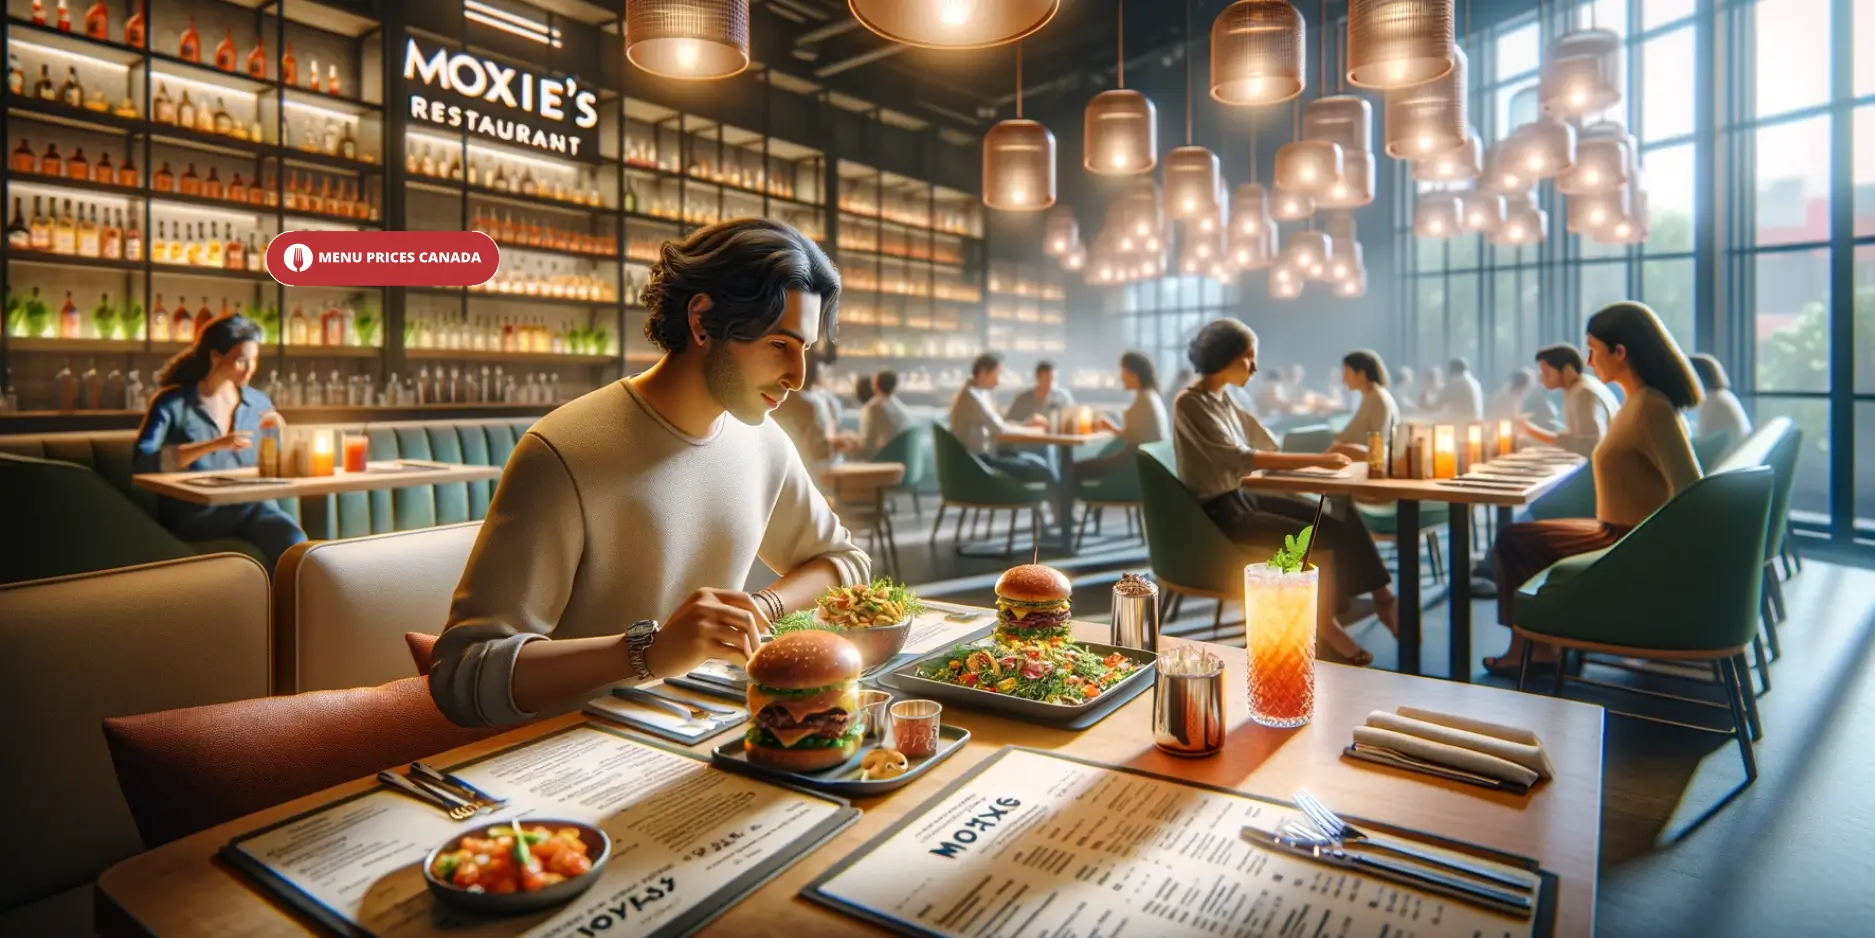 Moxies-restaurant-Menu-Prices-In-Canada